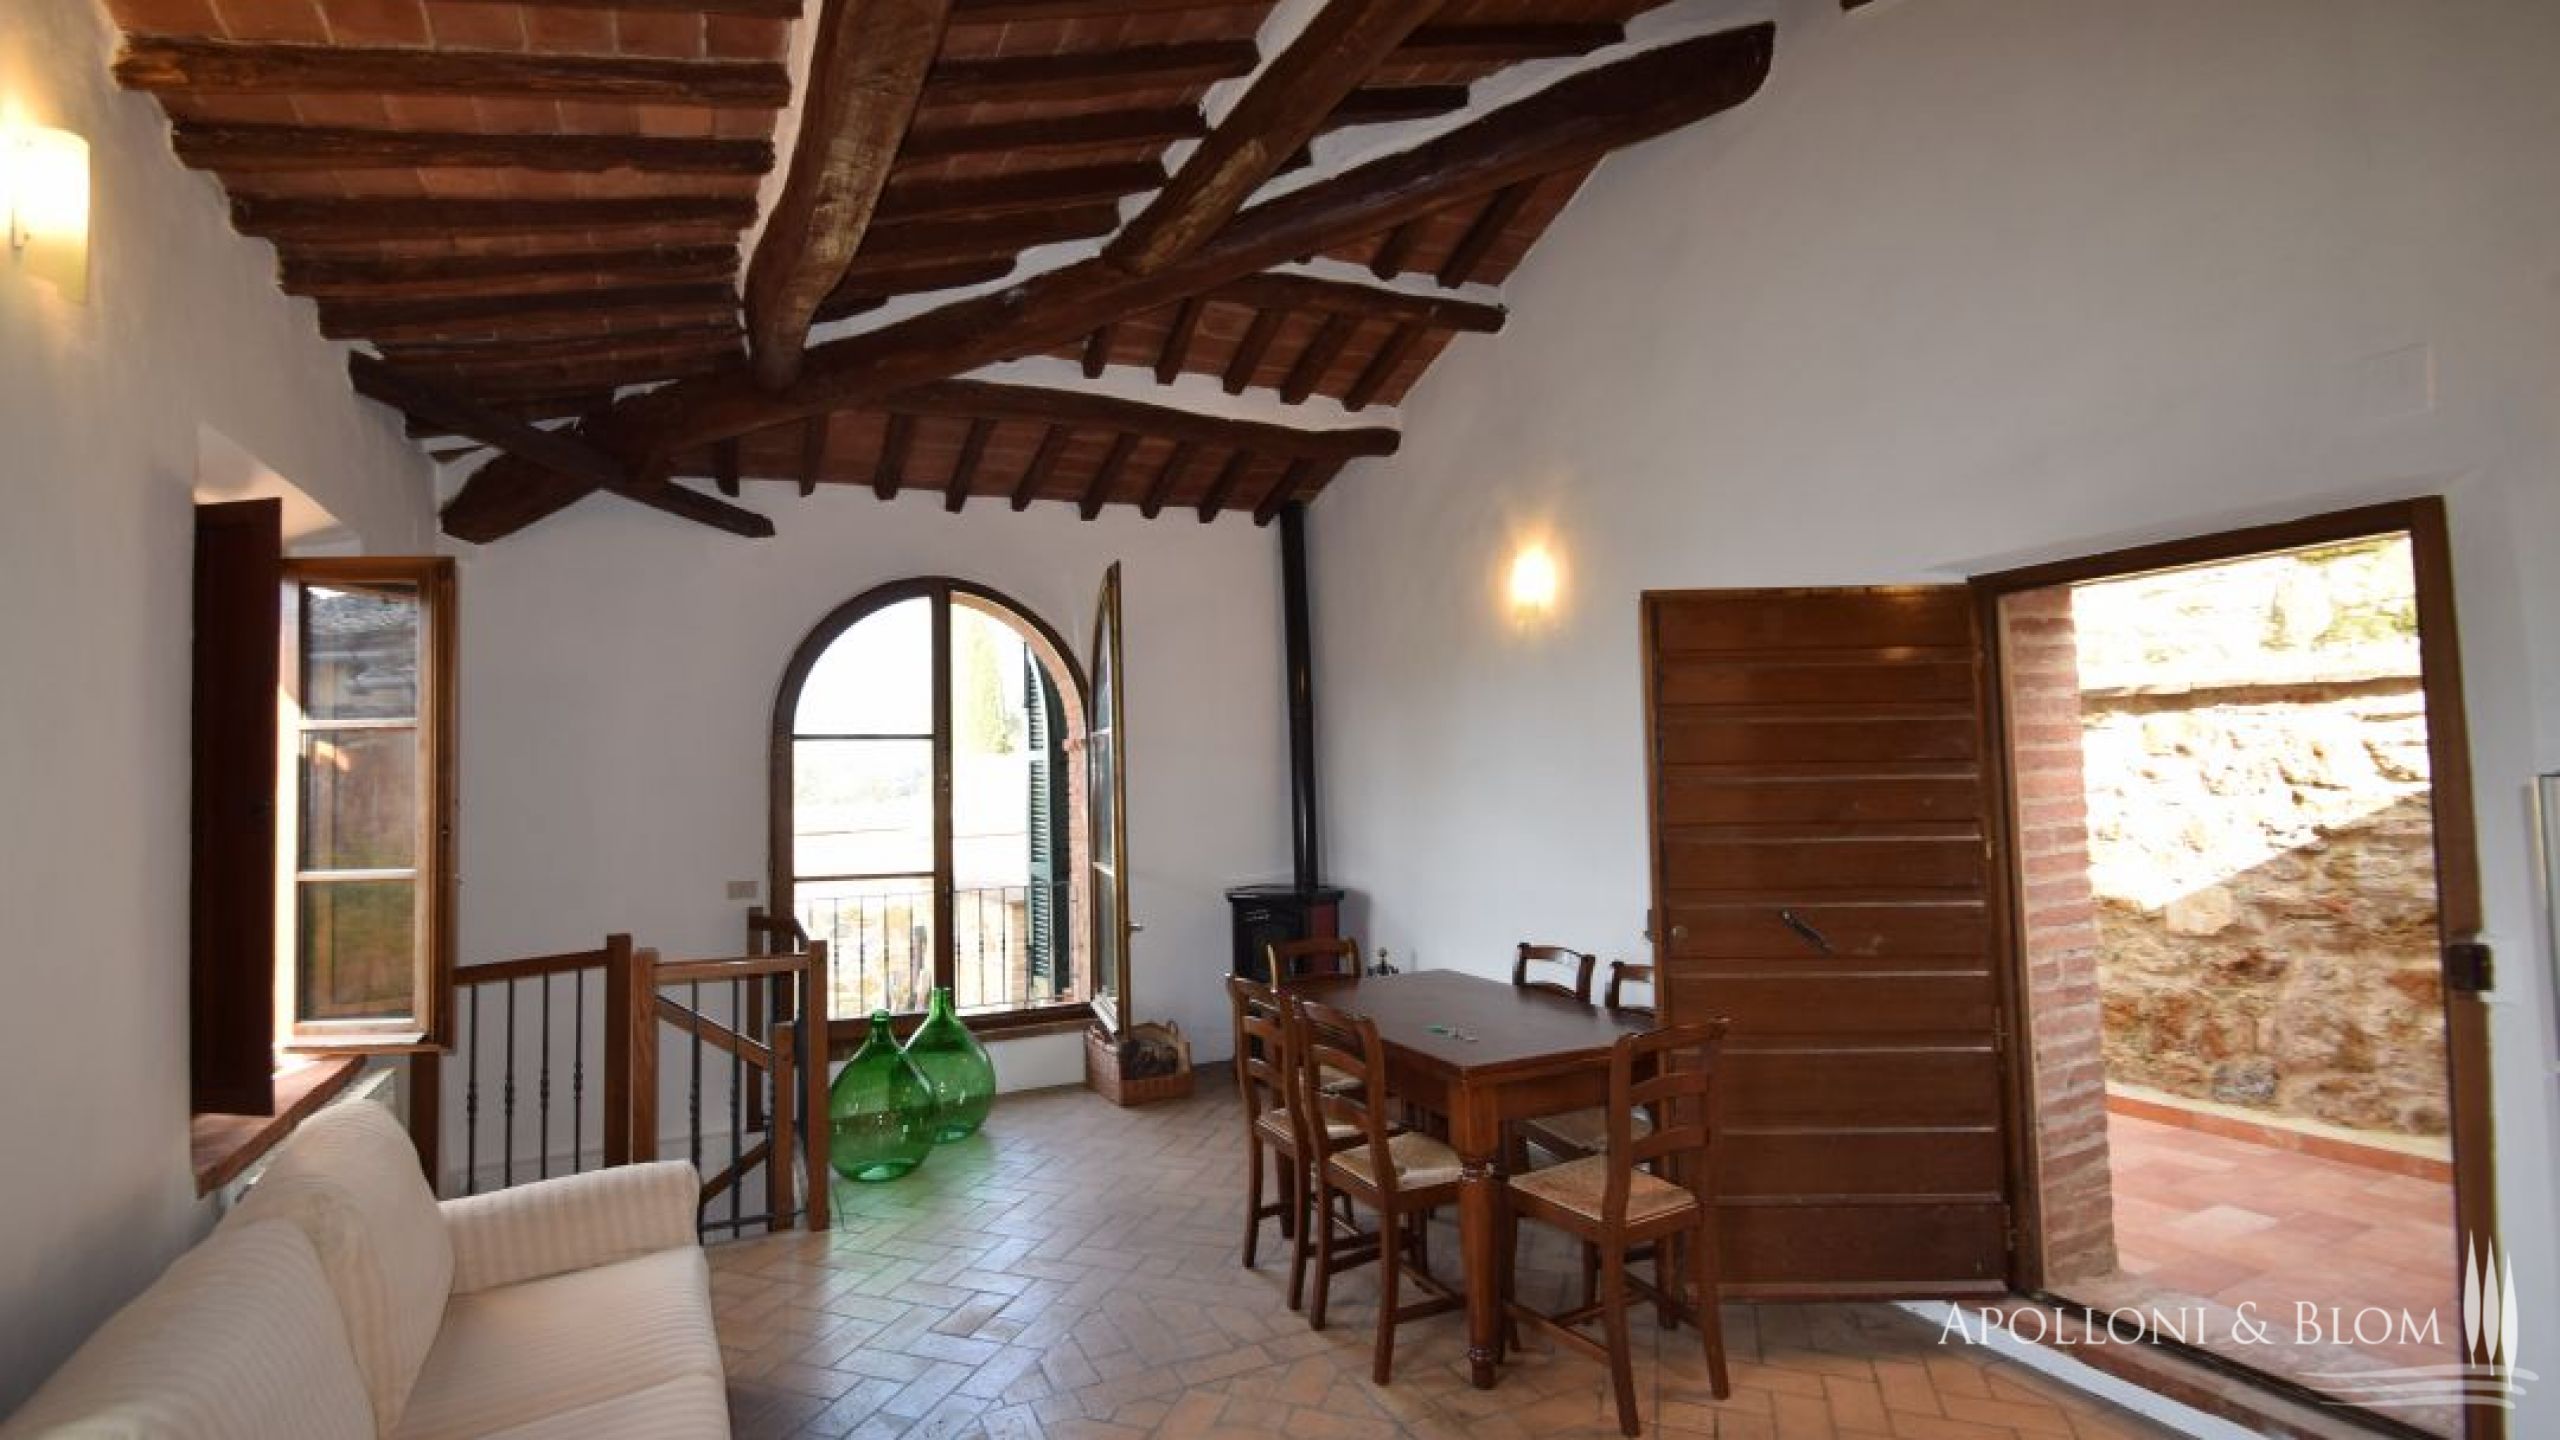 Casa indipendente Il piccolo Giardino, Montalcino - Toscana